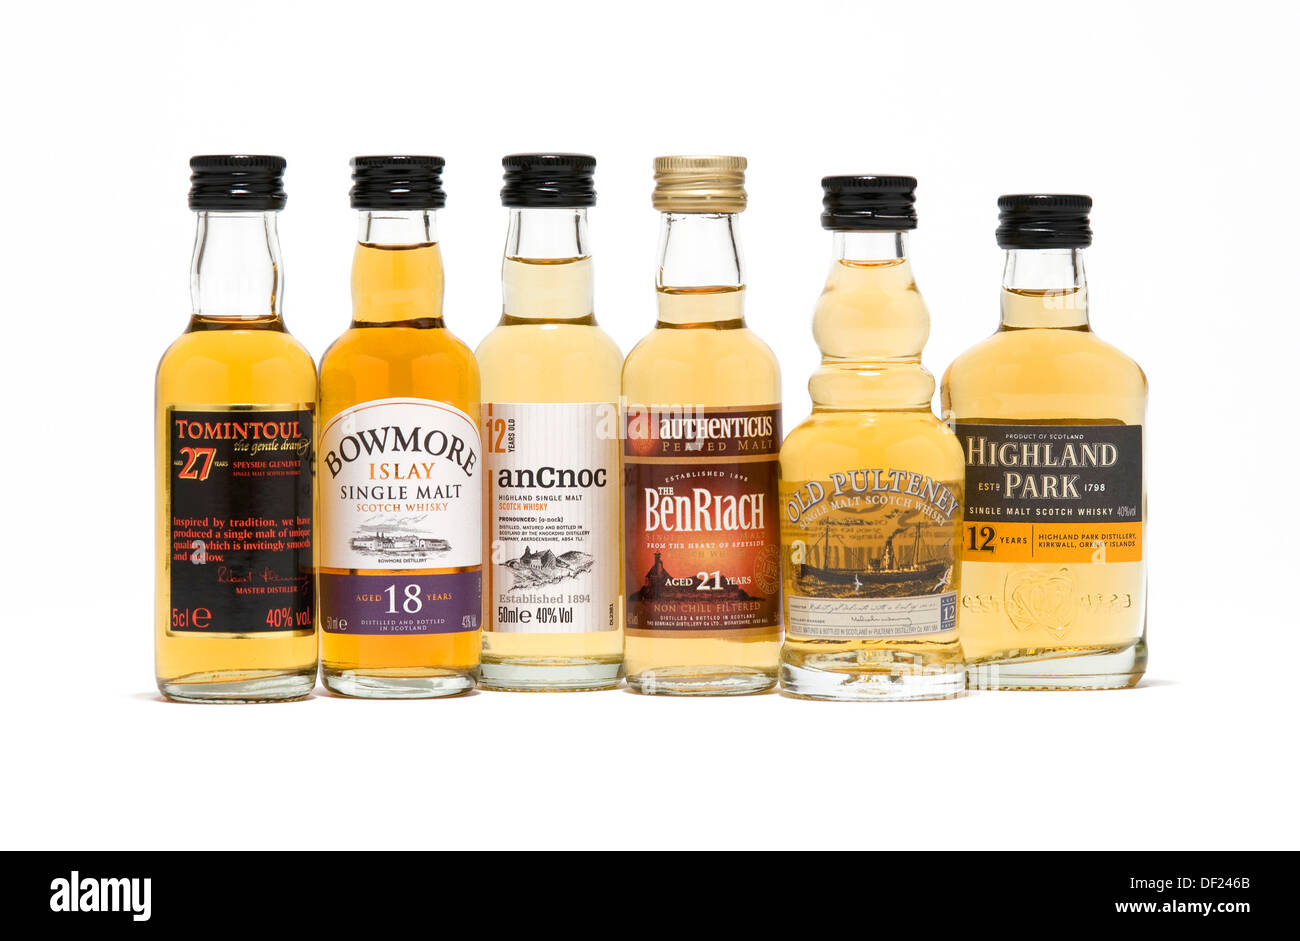 Auswahl von Miniatur-Whisky-Flaschen Stockfotografie - Alamy